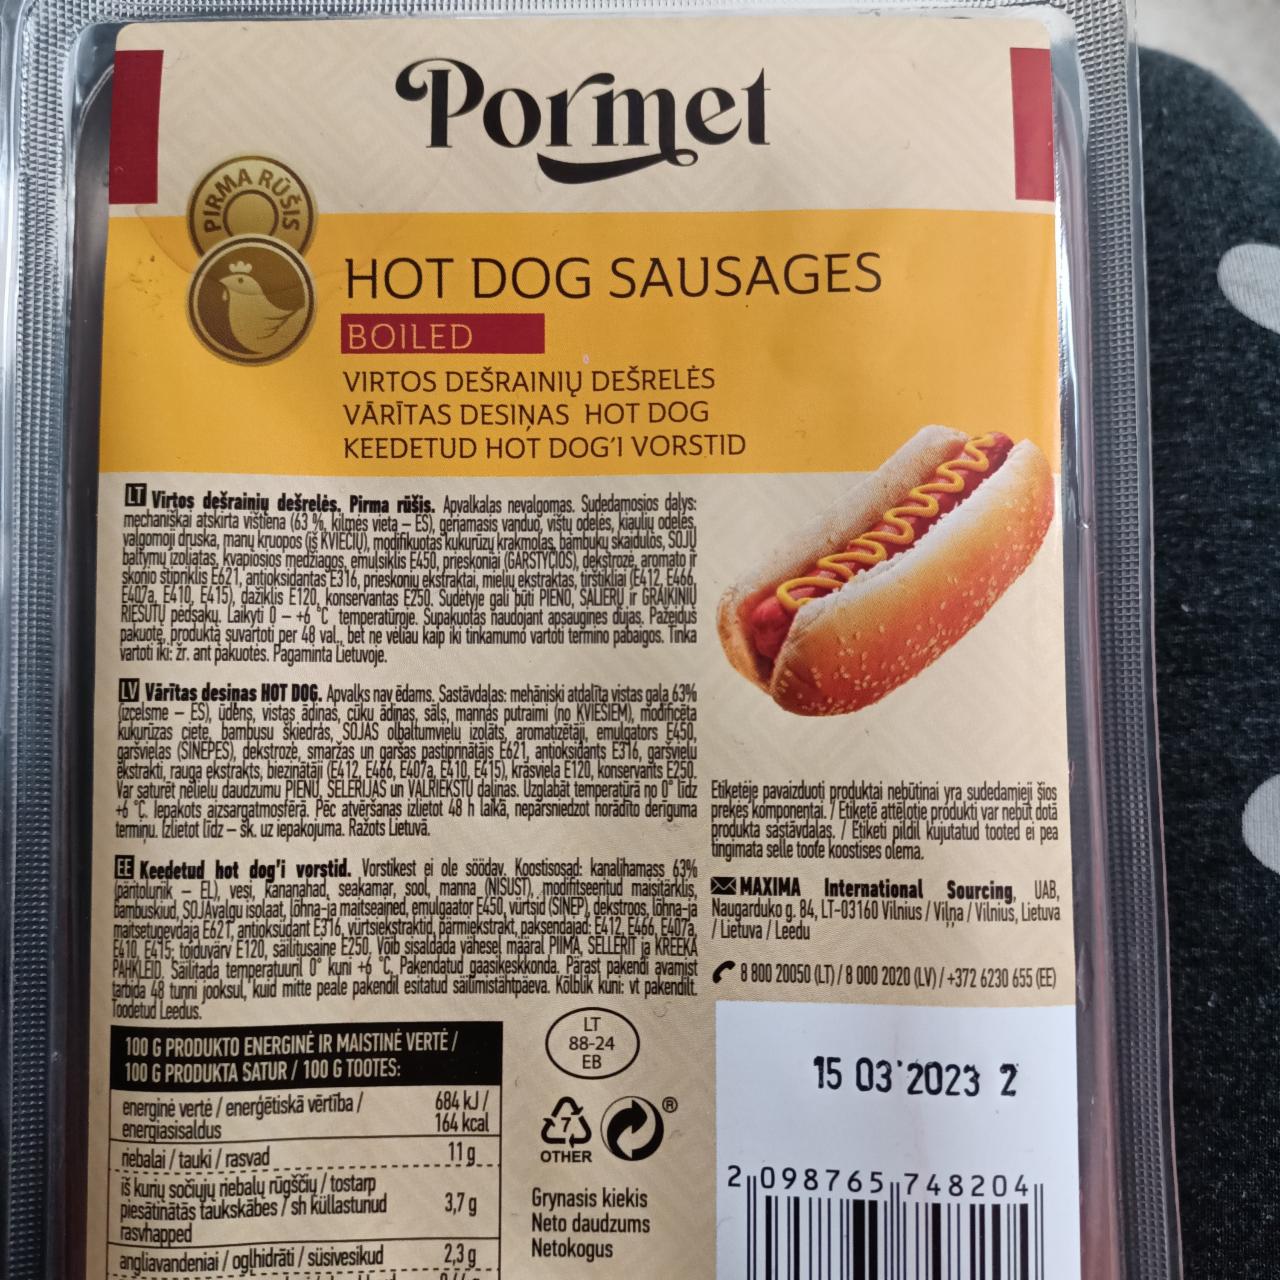 Фото - Сосиски для хот дога Hod Dog Sausages Pormet